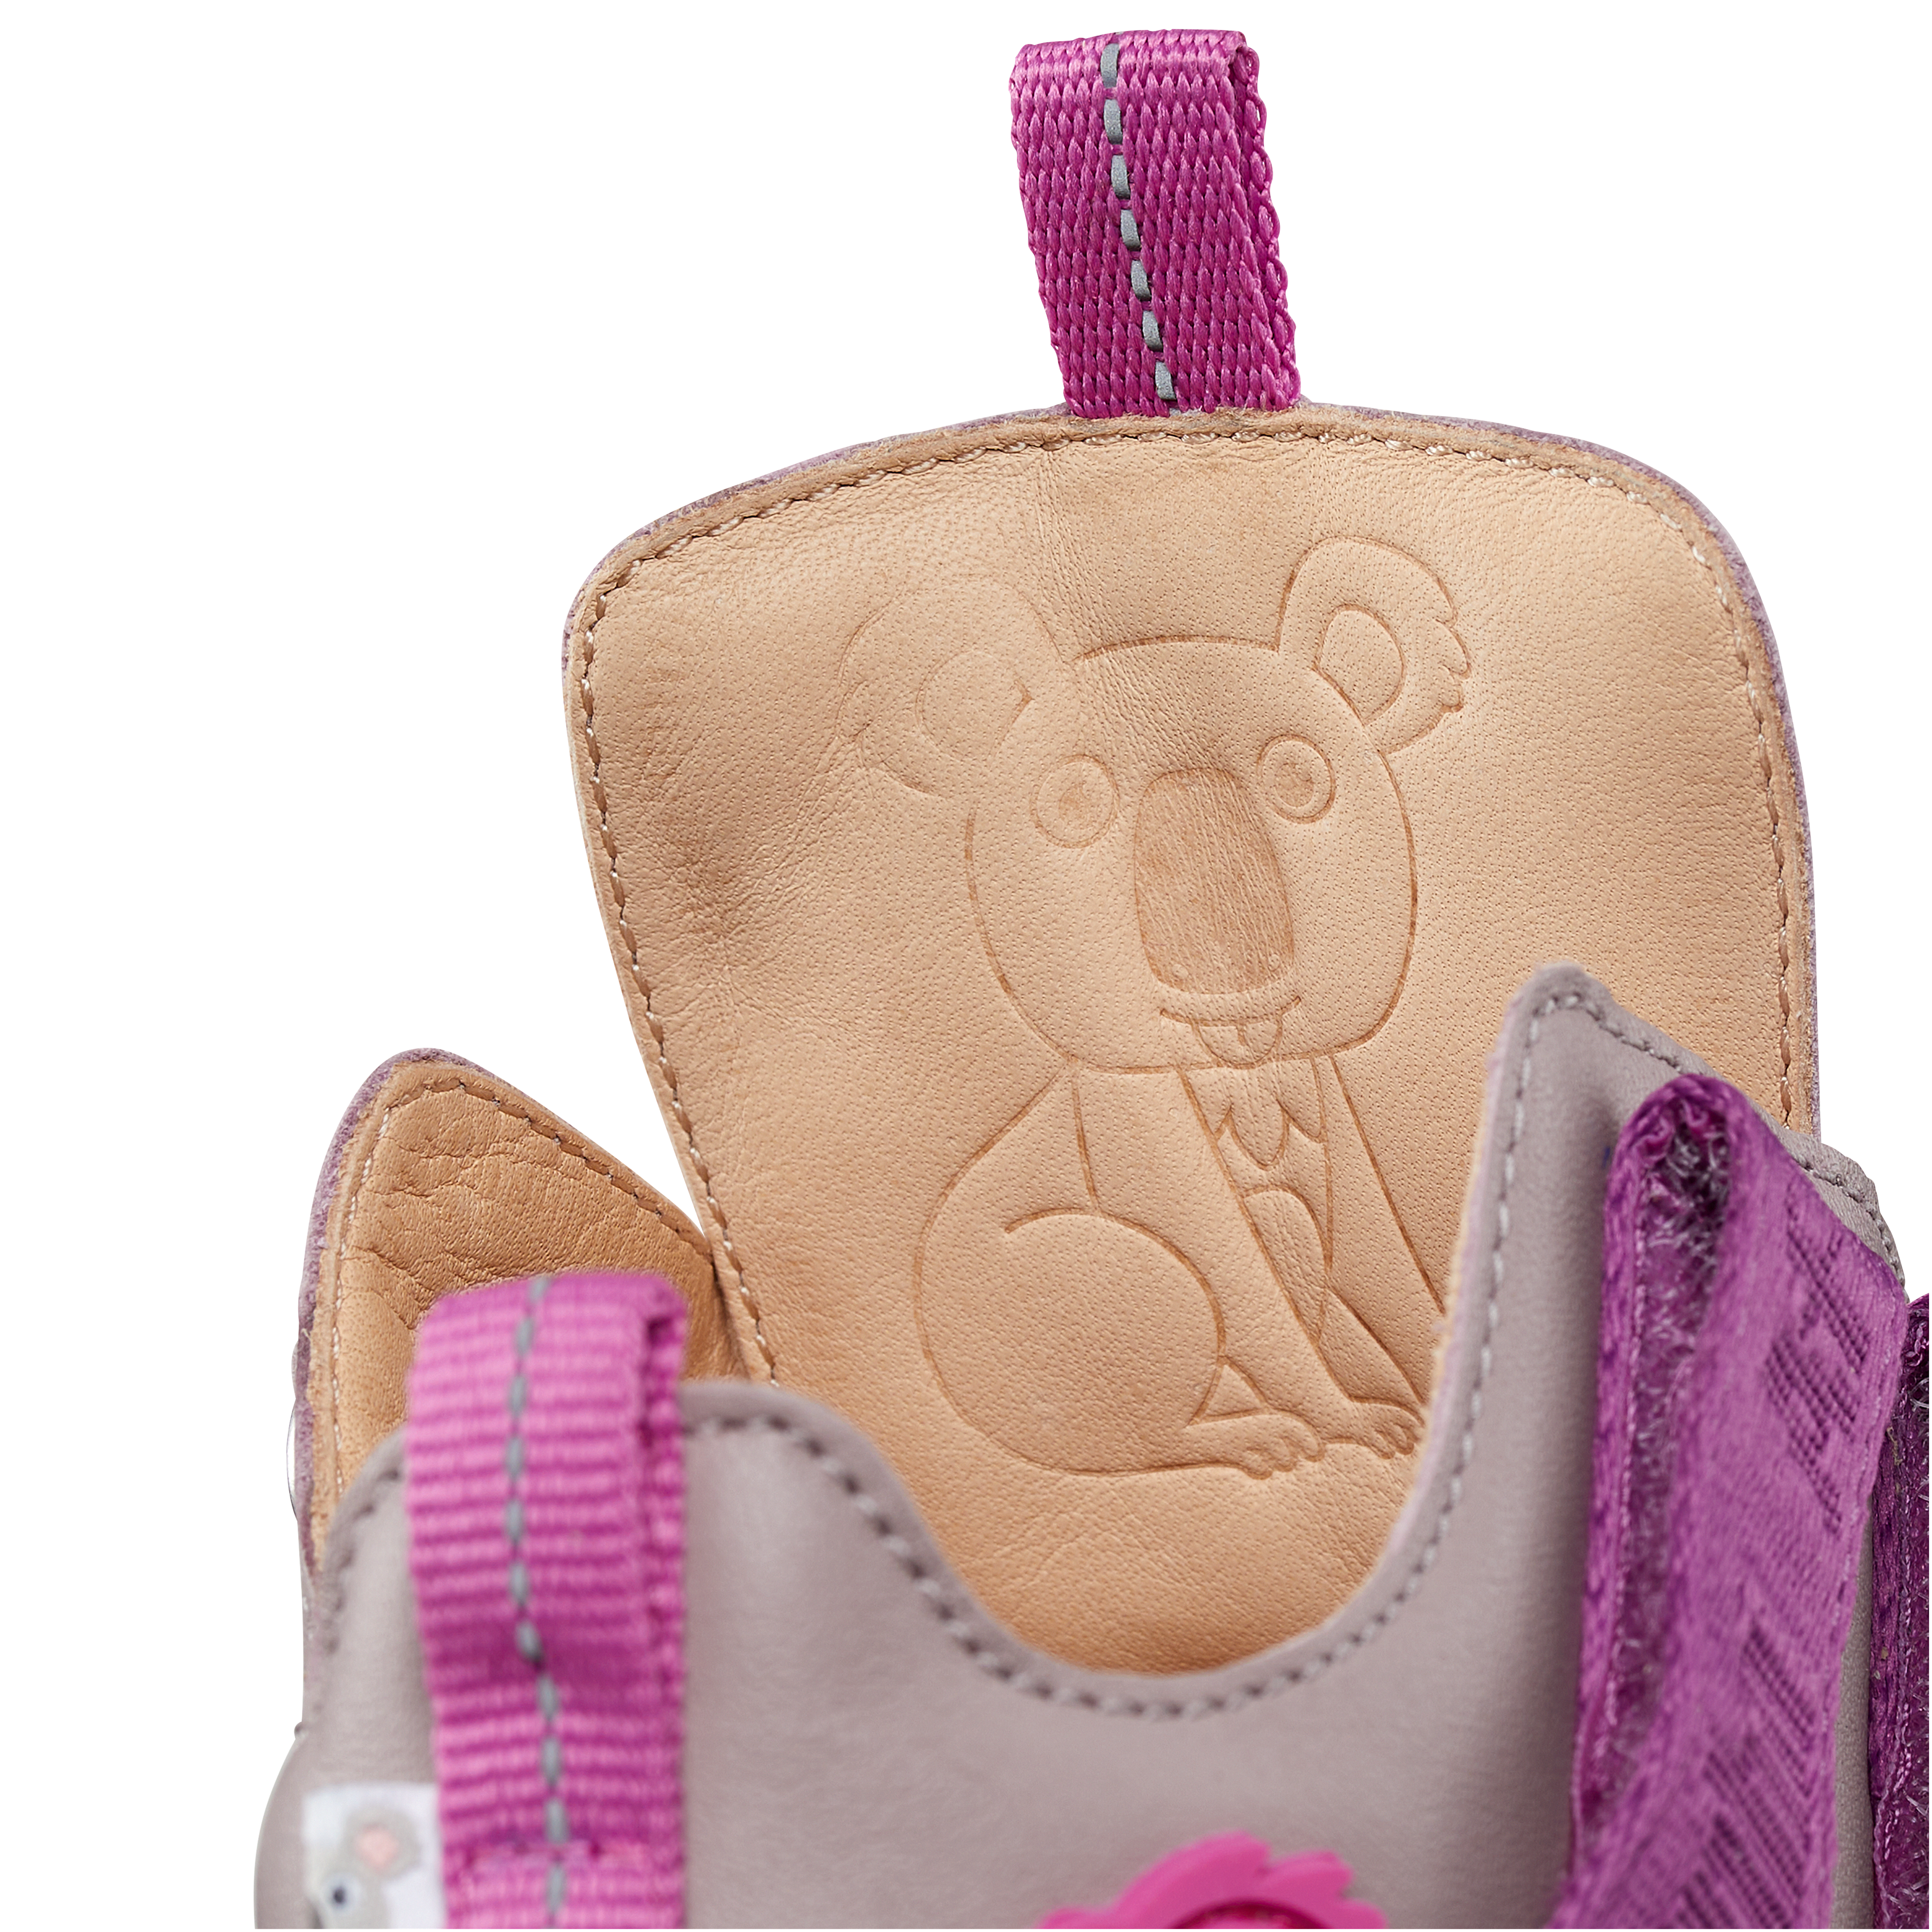 Affenzahn Leather Buddy barfods overgangssko til børn i farven koala / rose, detalje